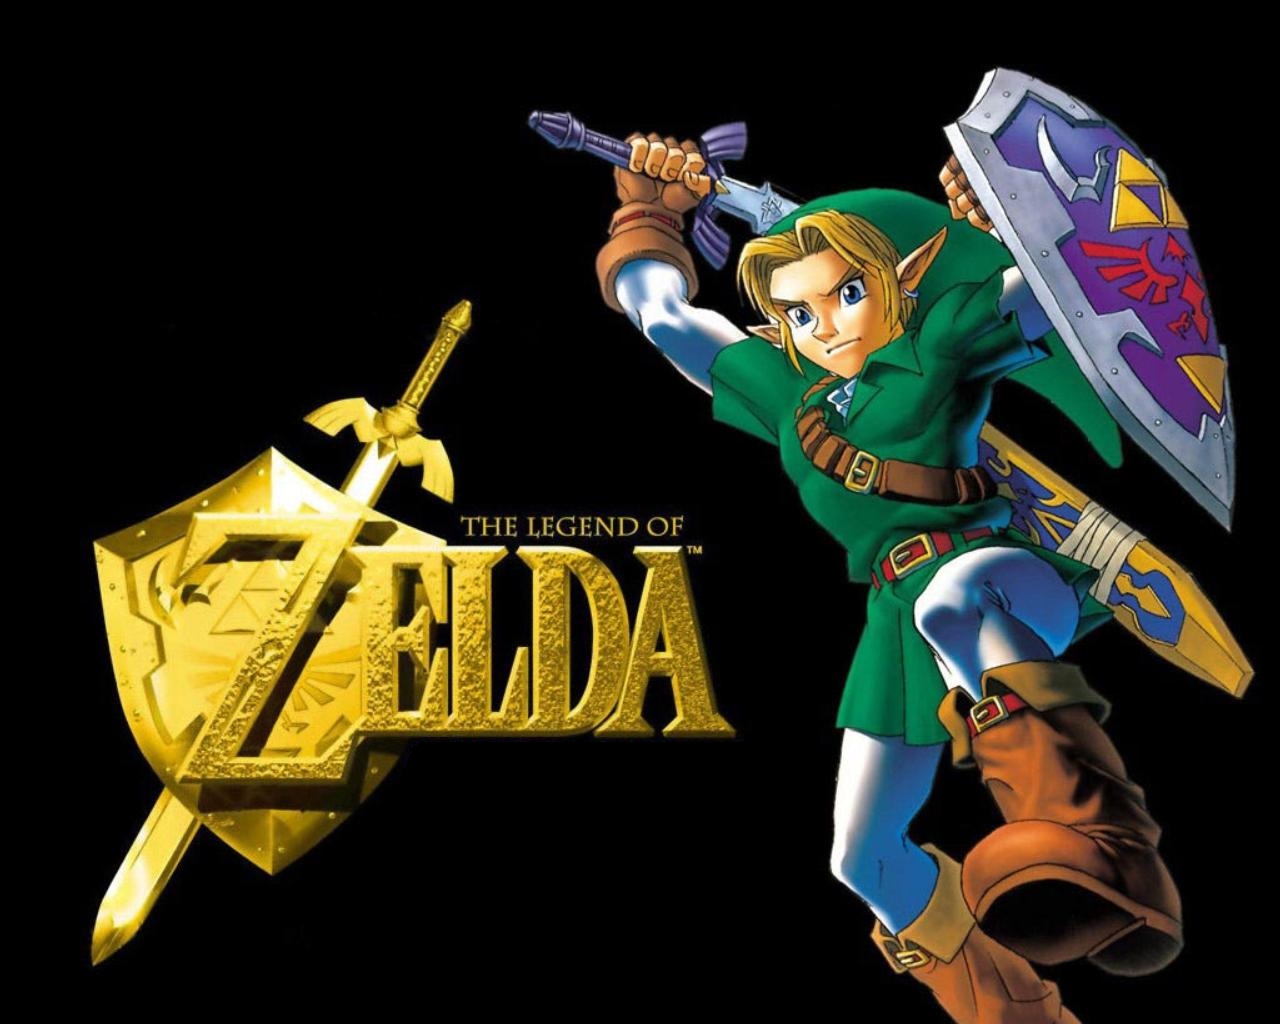 "The Legend of Zelda" desktop wallpaper (1280 x 1024 pixels)